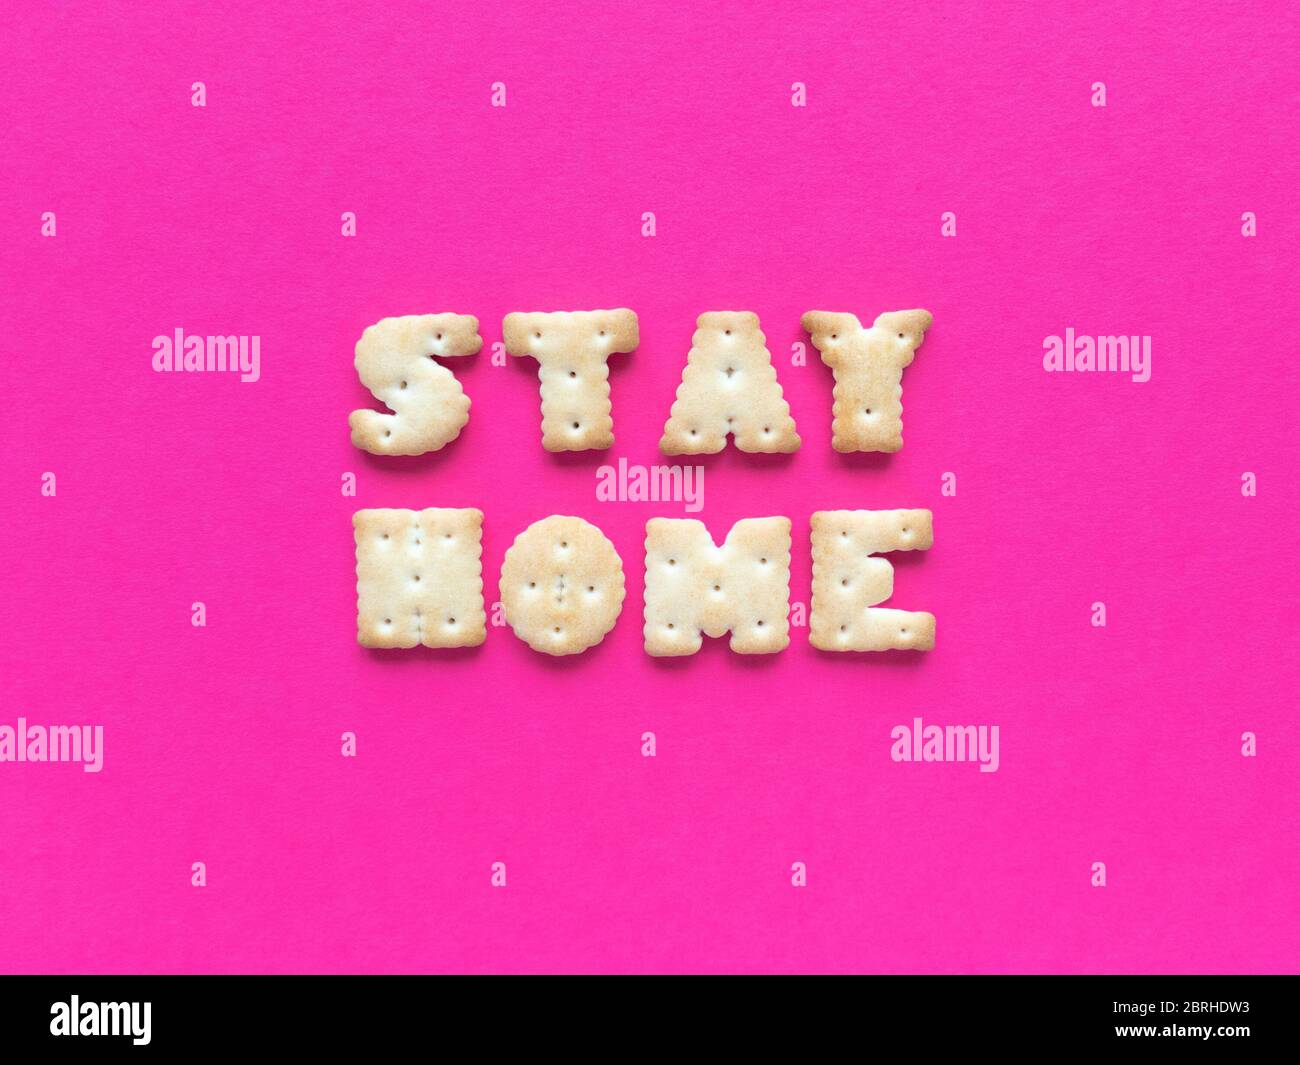 Rimani a casa. Citazione di quarantena da cracker su sfondo rosa. Semplice disposizione piatta con texture pastello. Foto di scorta. Foto Stock